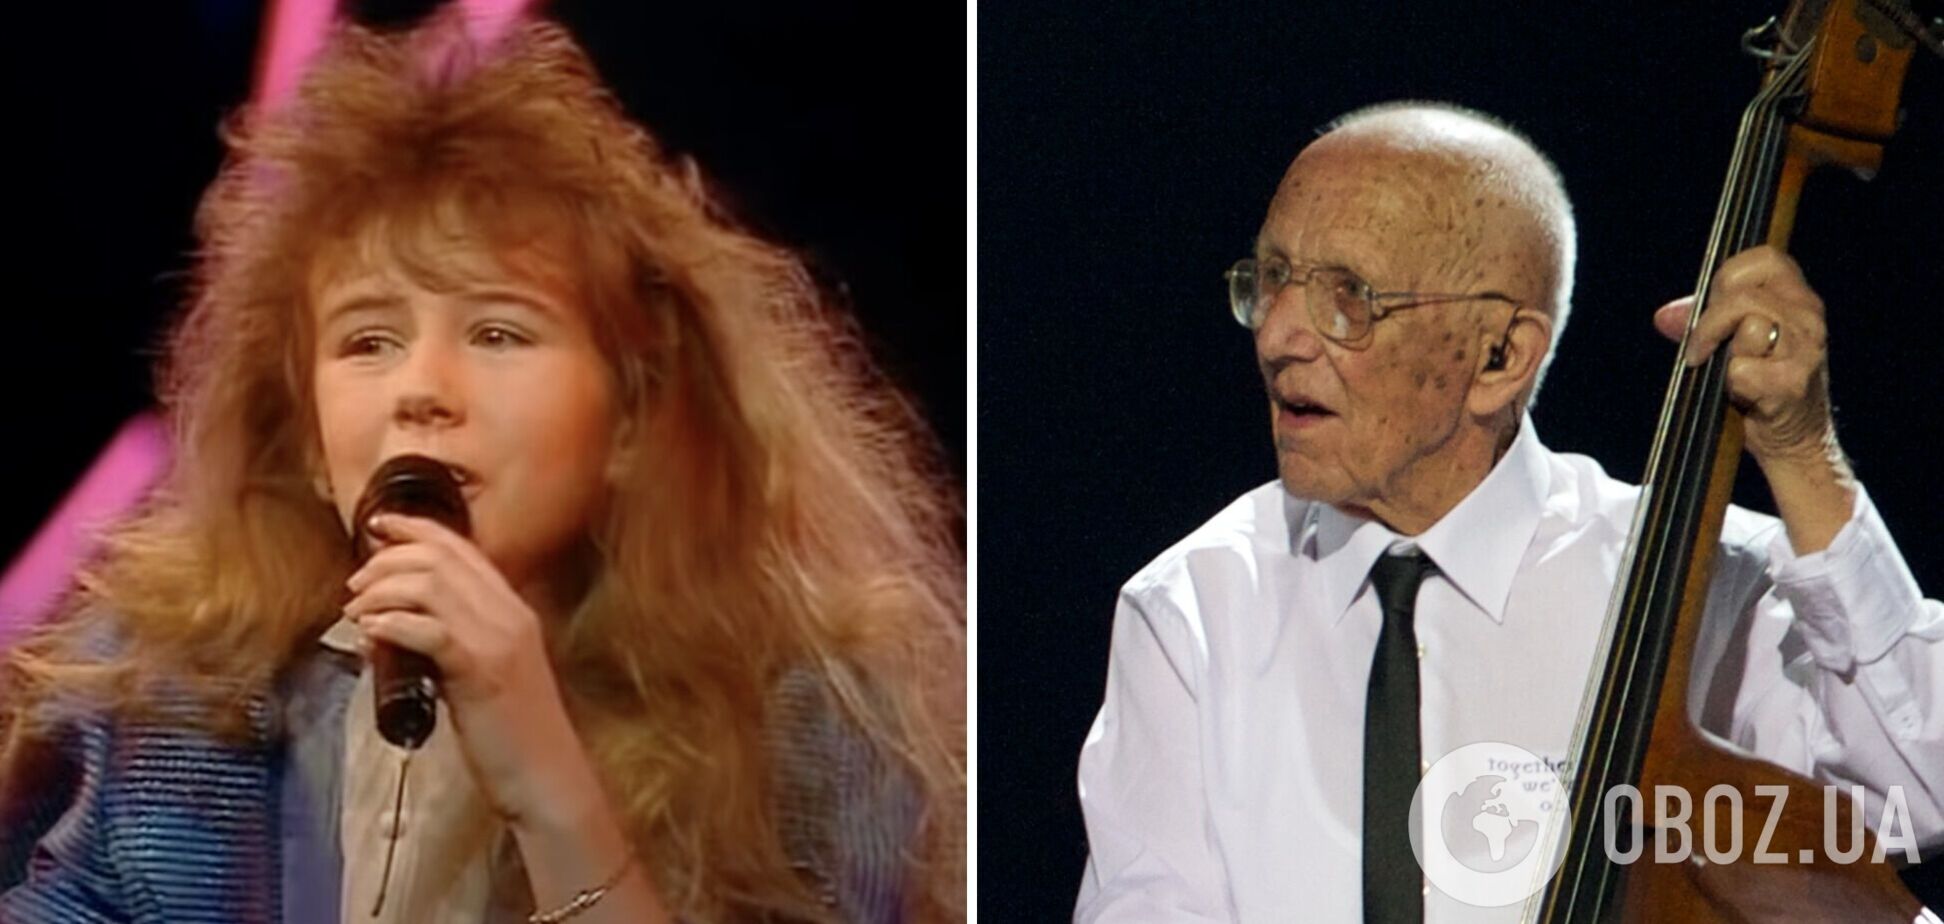 11 и 95 лет: какими были выступления самого младшего и самого старшего участников Евровидения и какие места они заняли